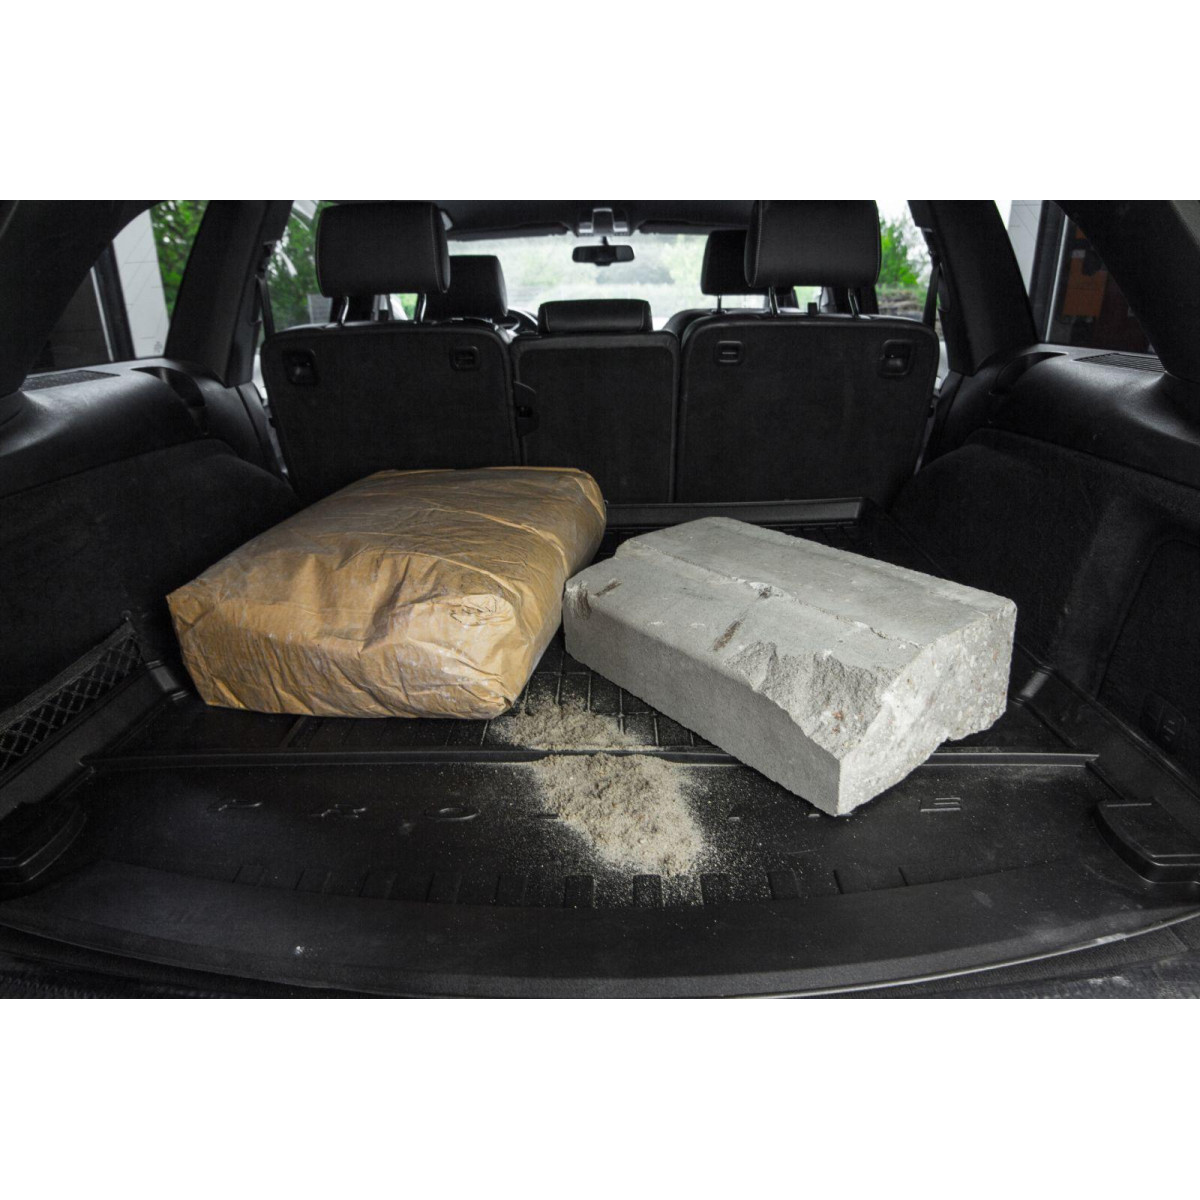 Guminis bagažinės kilimėlis Proline Ford Kuga 2013-2019m. / paaukštintais kraštais